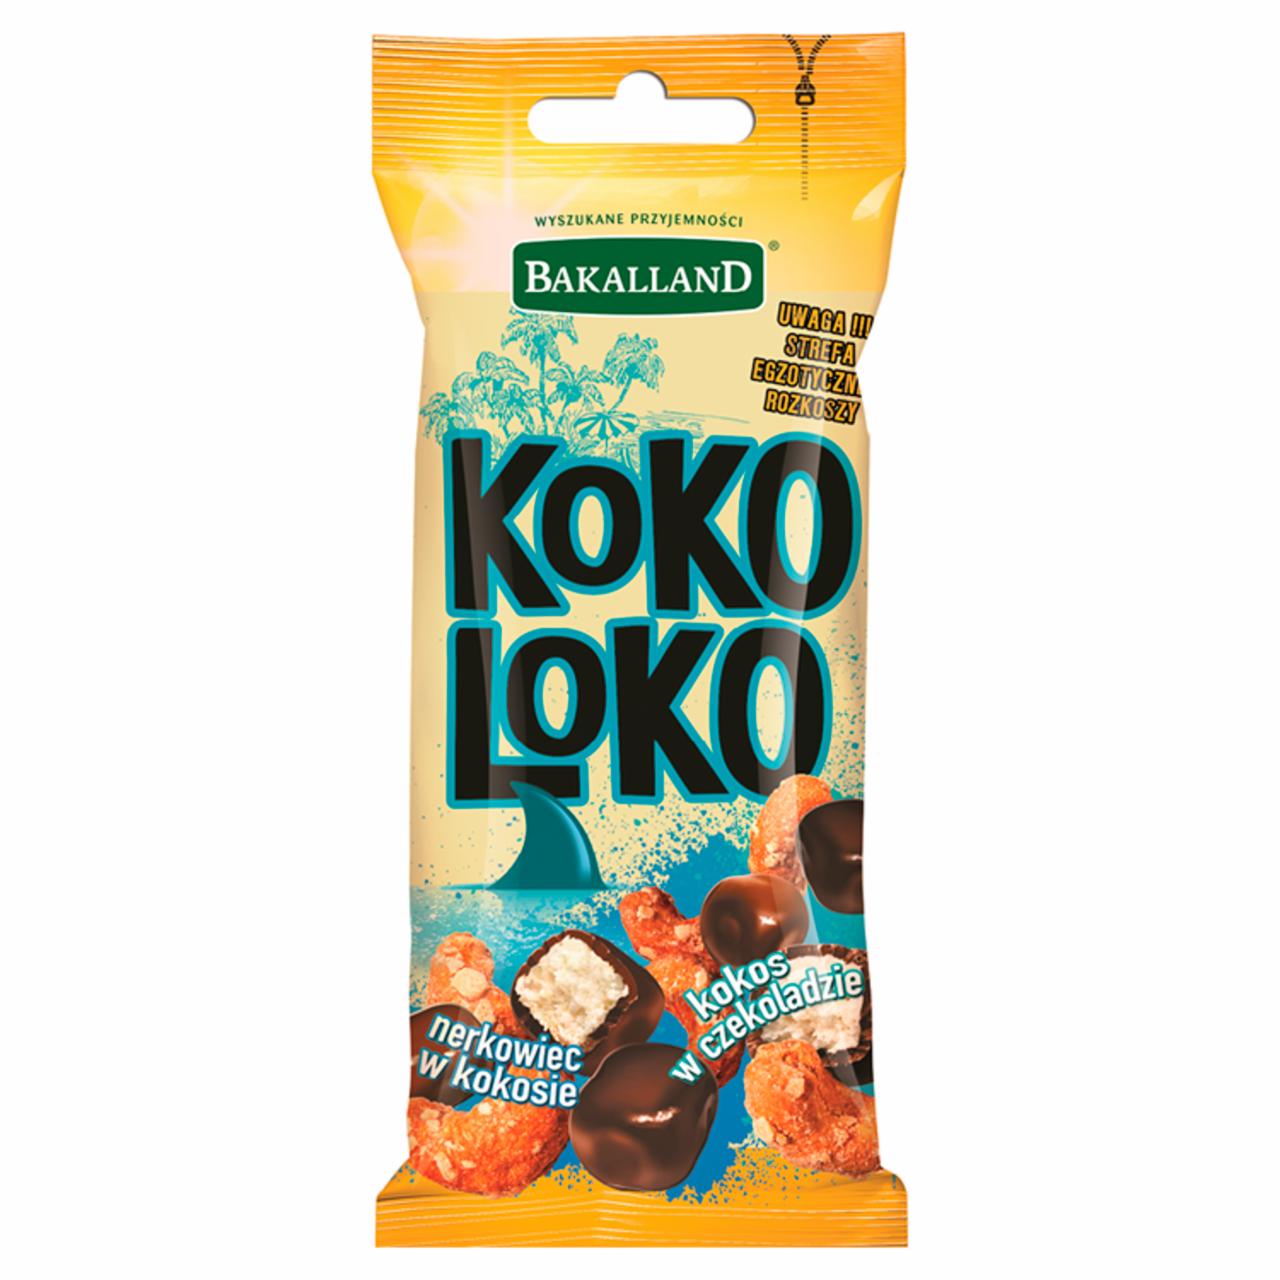 Zdjęcia - Bakalland Koko Loko Mieszanka kokosa w czekoladzie i nerkowca w kokosie 50 g